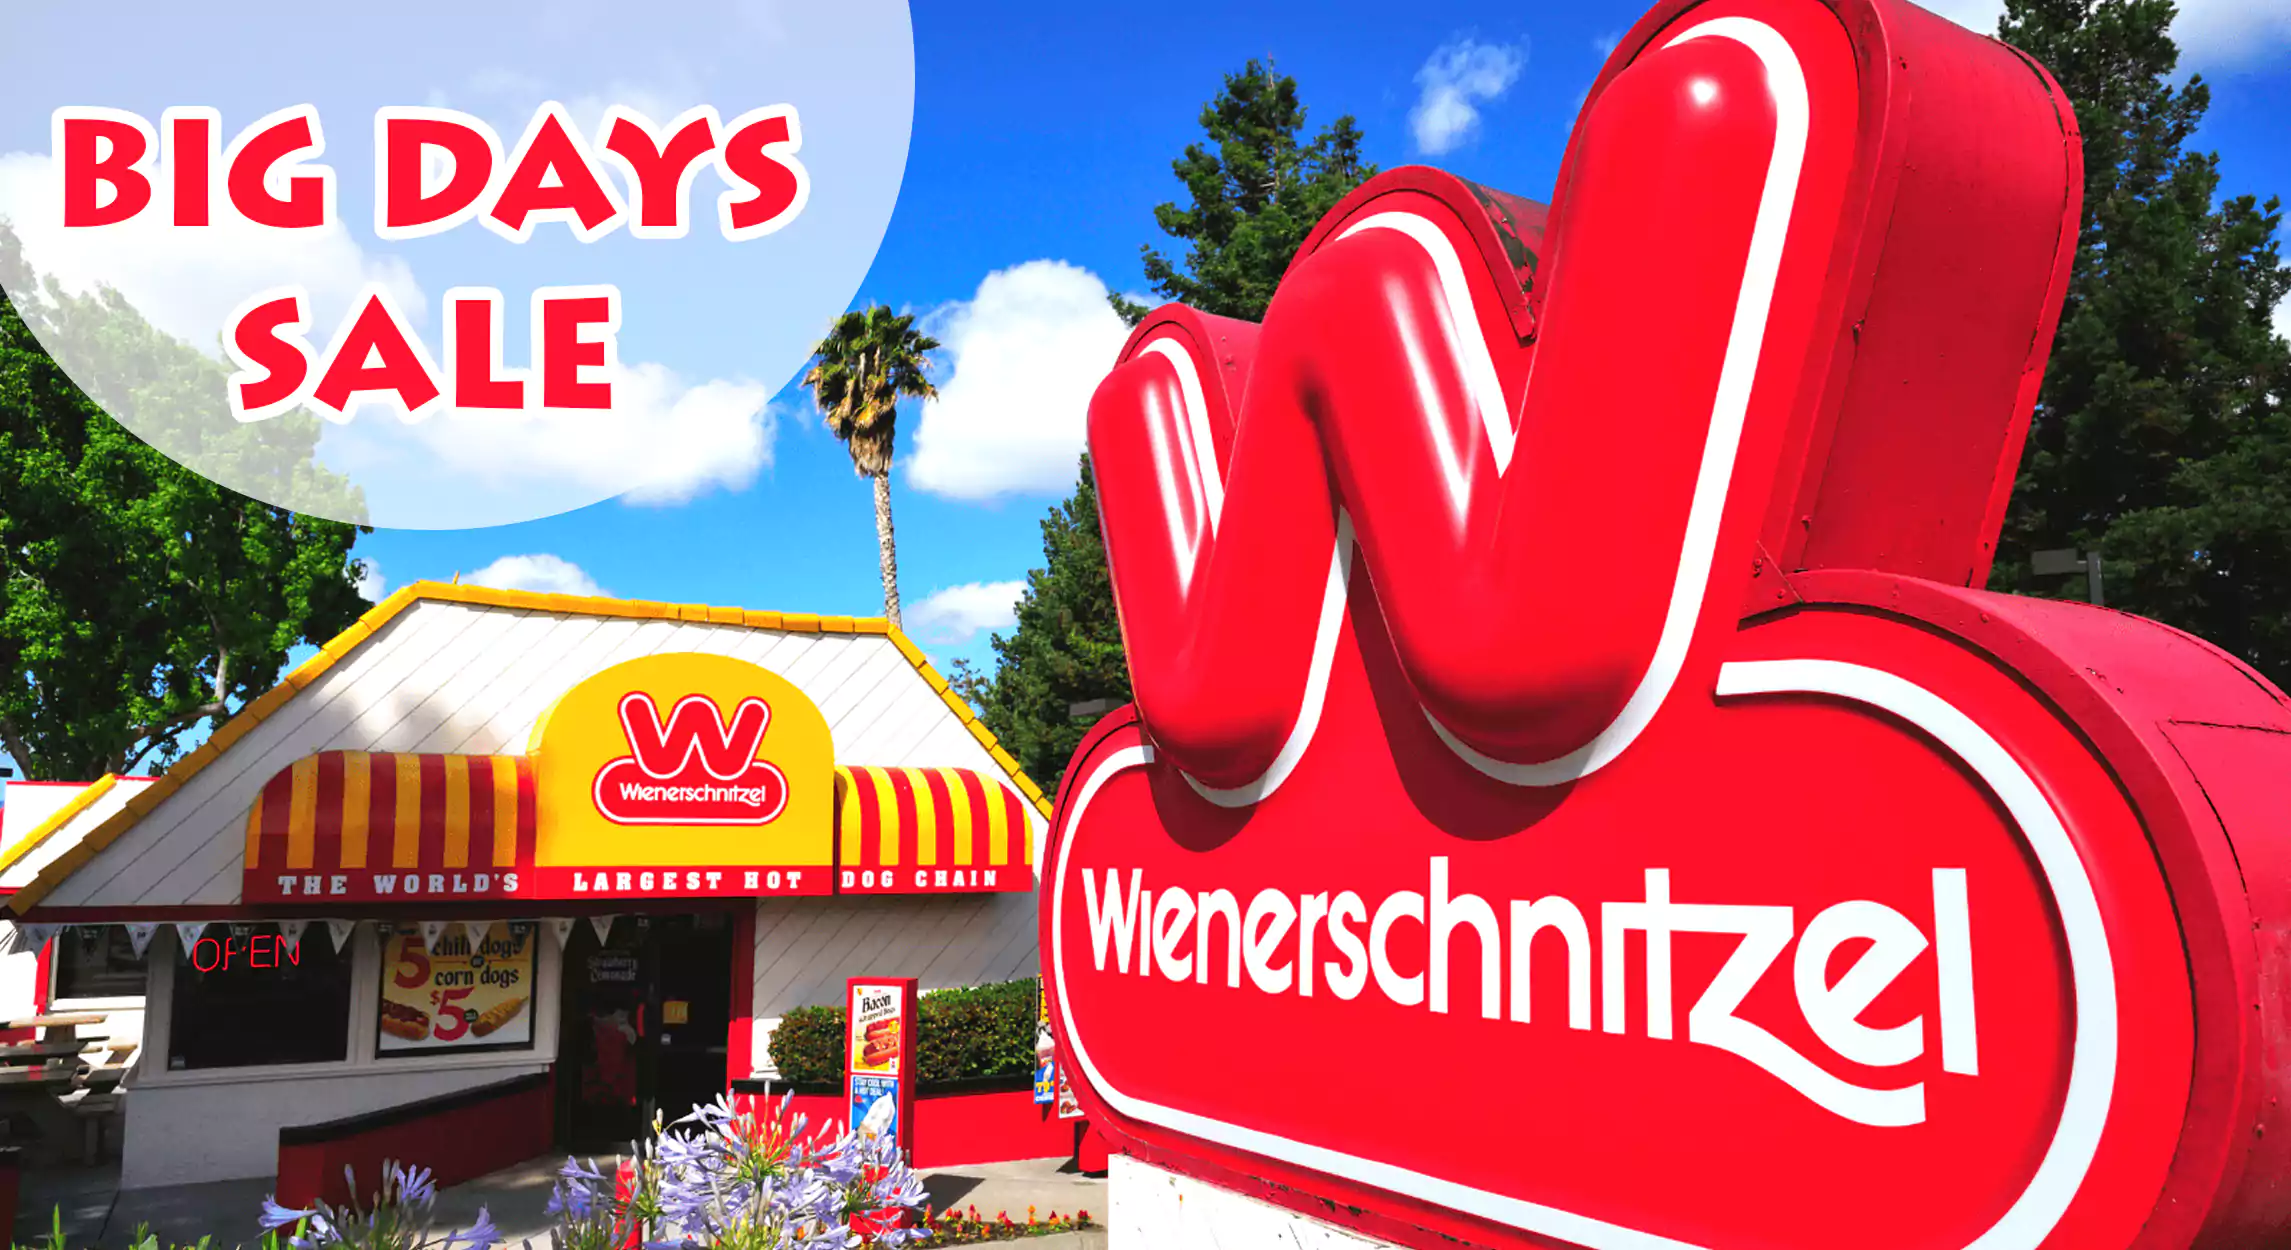 Wienerschnitzel Big Days Sale